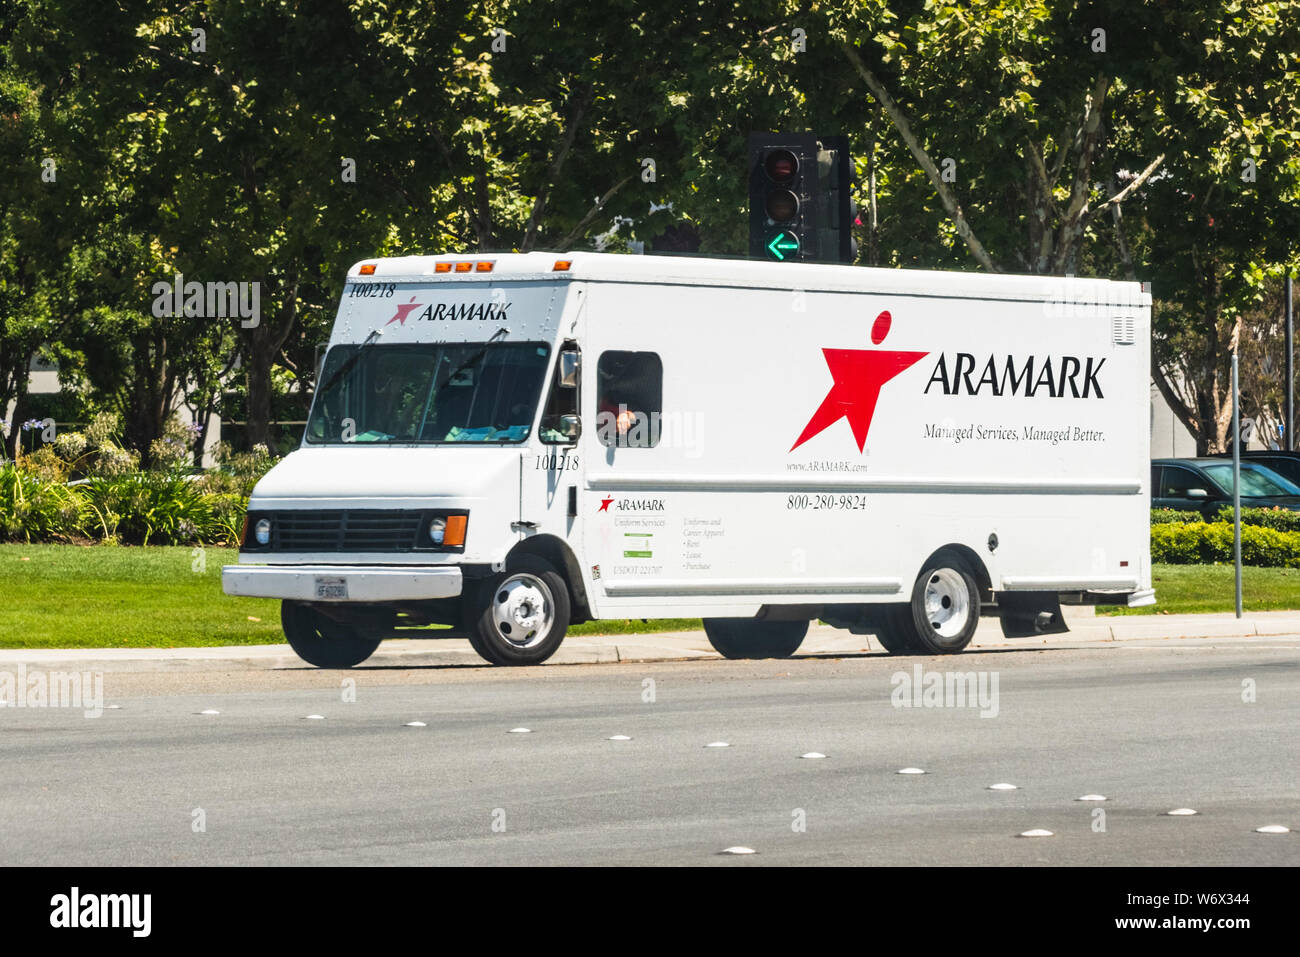 Agosto 1, 2019 / Sunnyvale CA / USA - Aramark vehículo haciendo entregas en South San Francisco Bay Area, ARAMARK Corporation es una comida americana servi Foto de stock